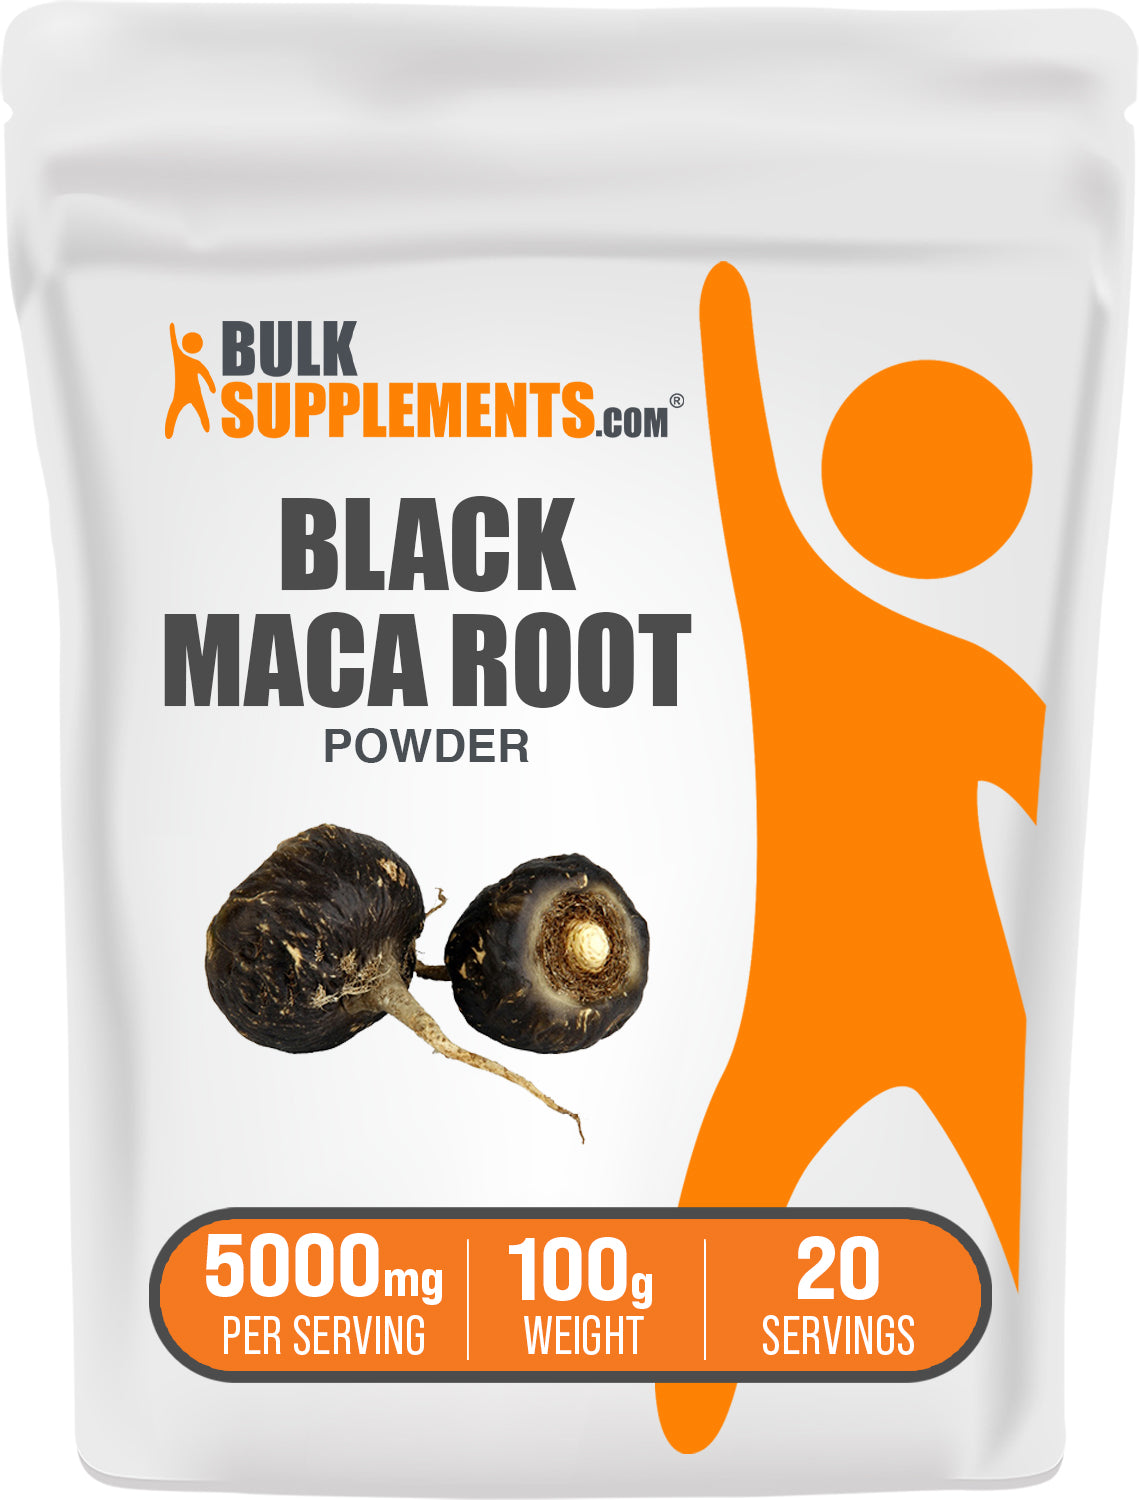 BulkSupplements.com Black Maca Powder 100g bag